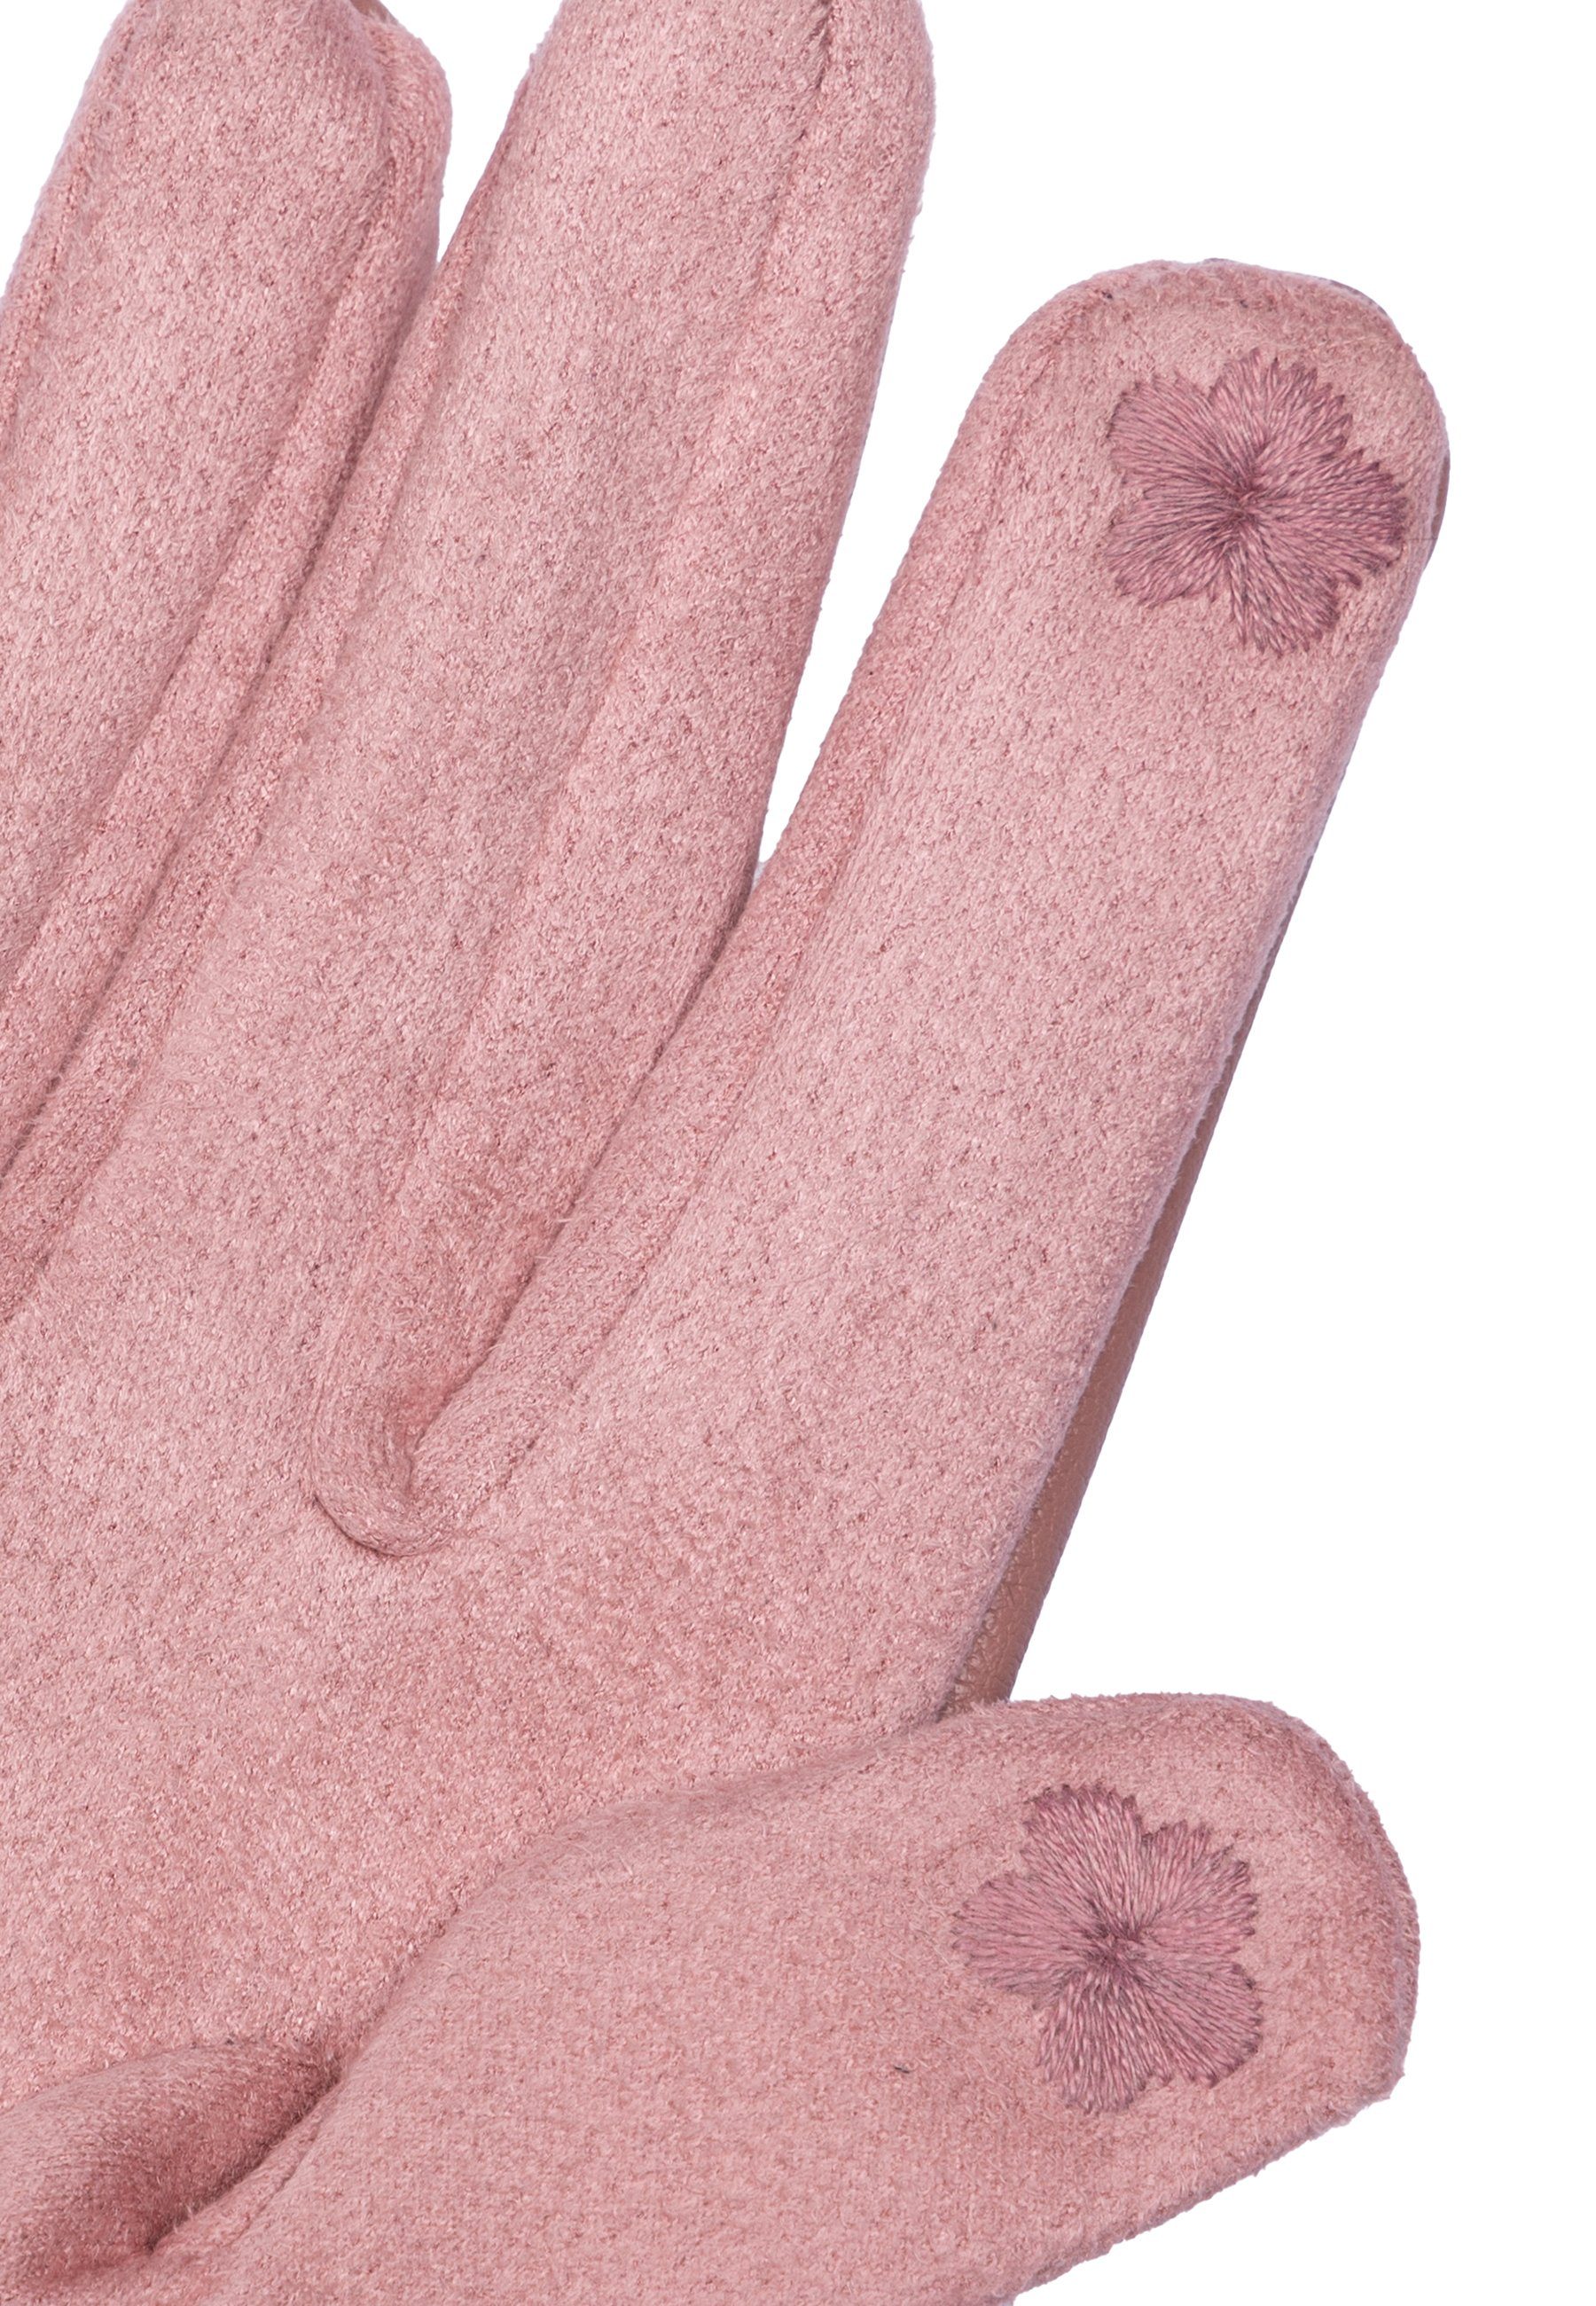 klassisch Strickhandschuhe rosa Handschuhe uni elegante Caspar Damen GLV016